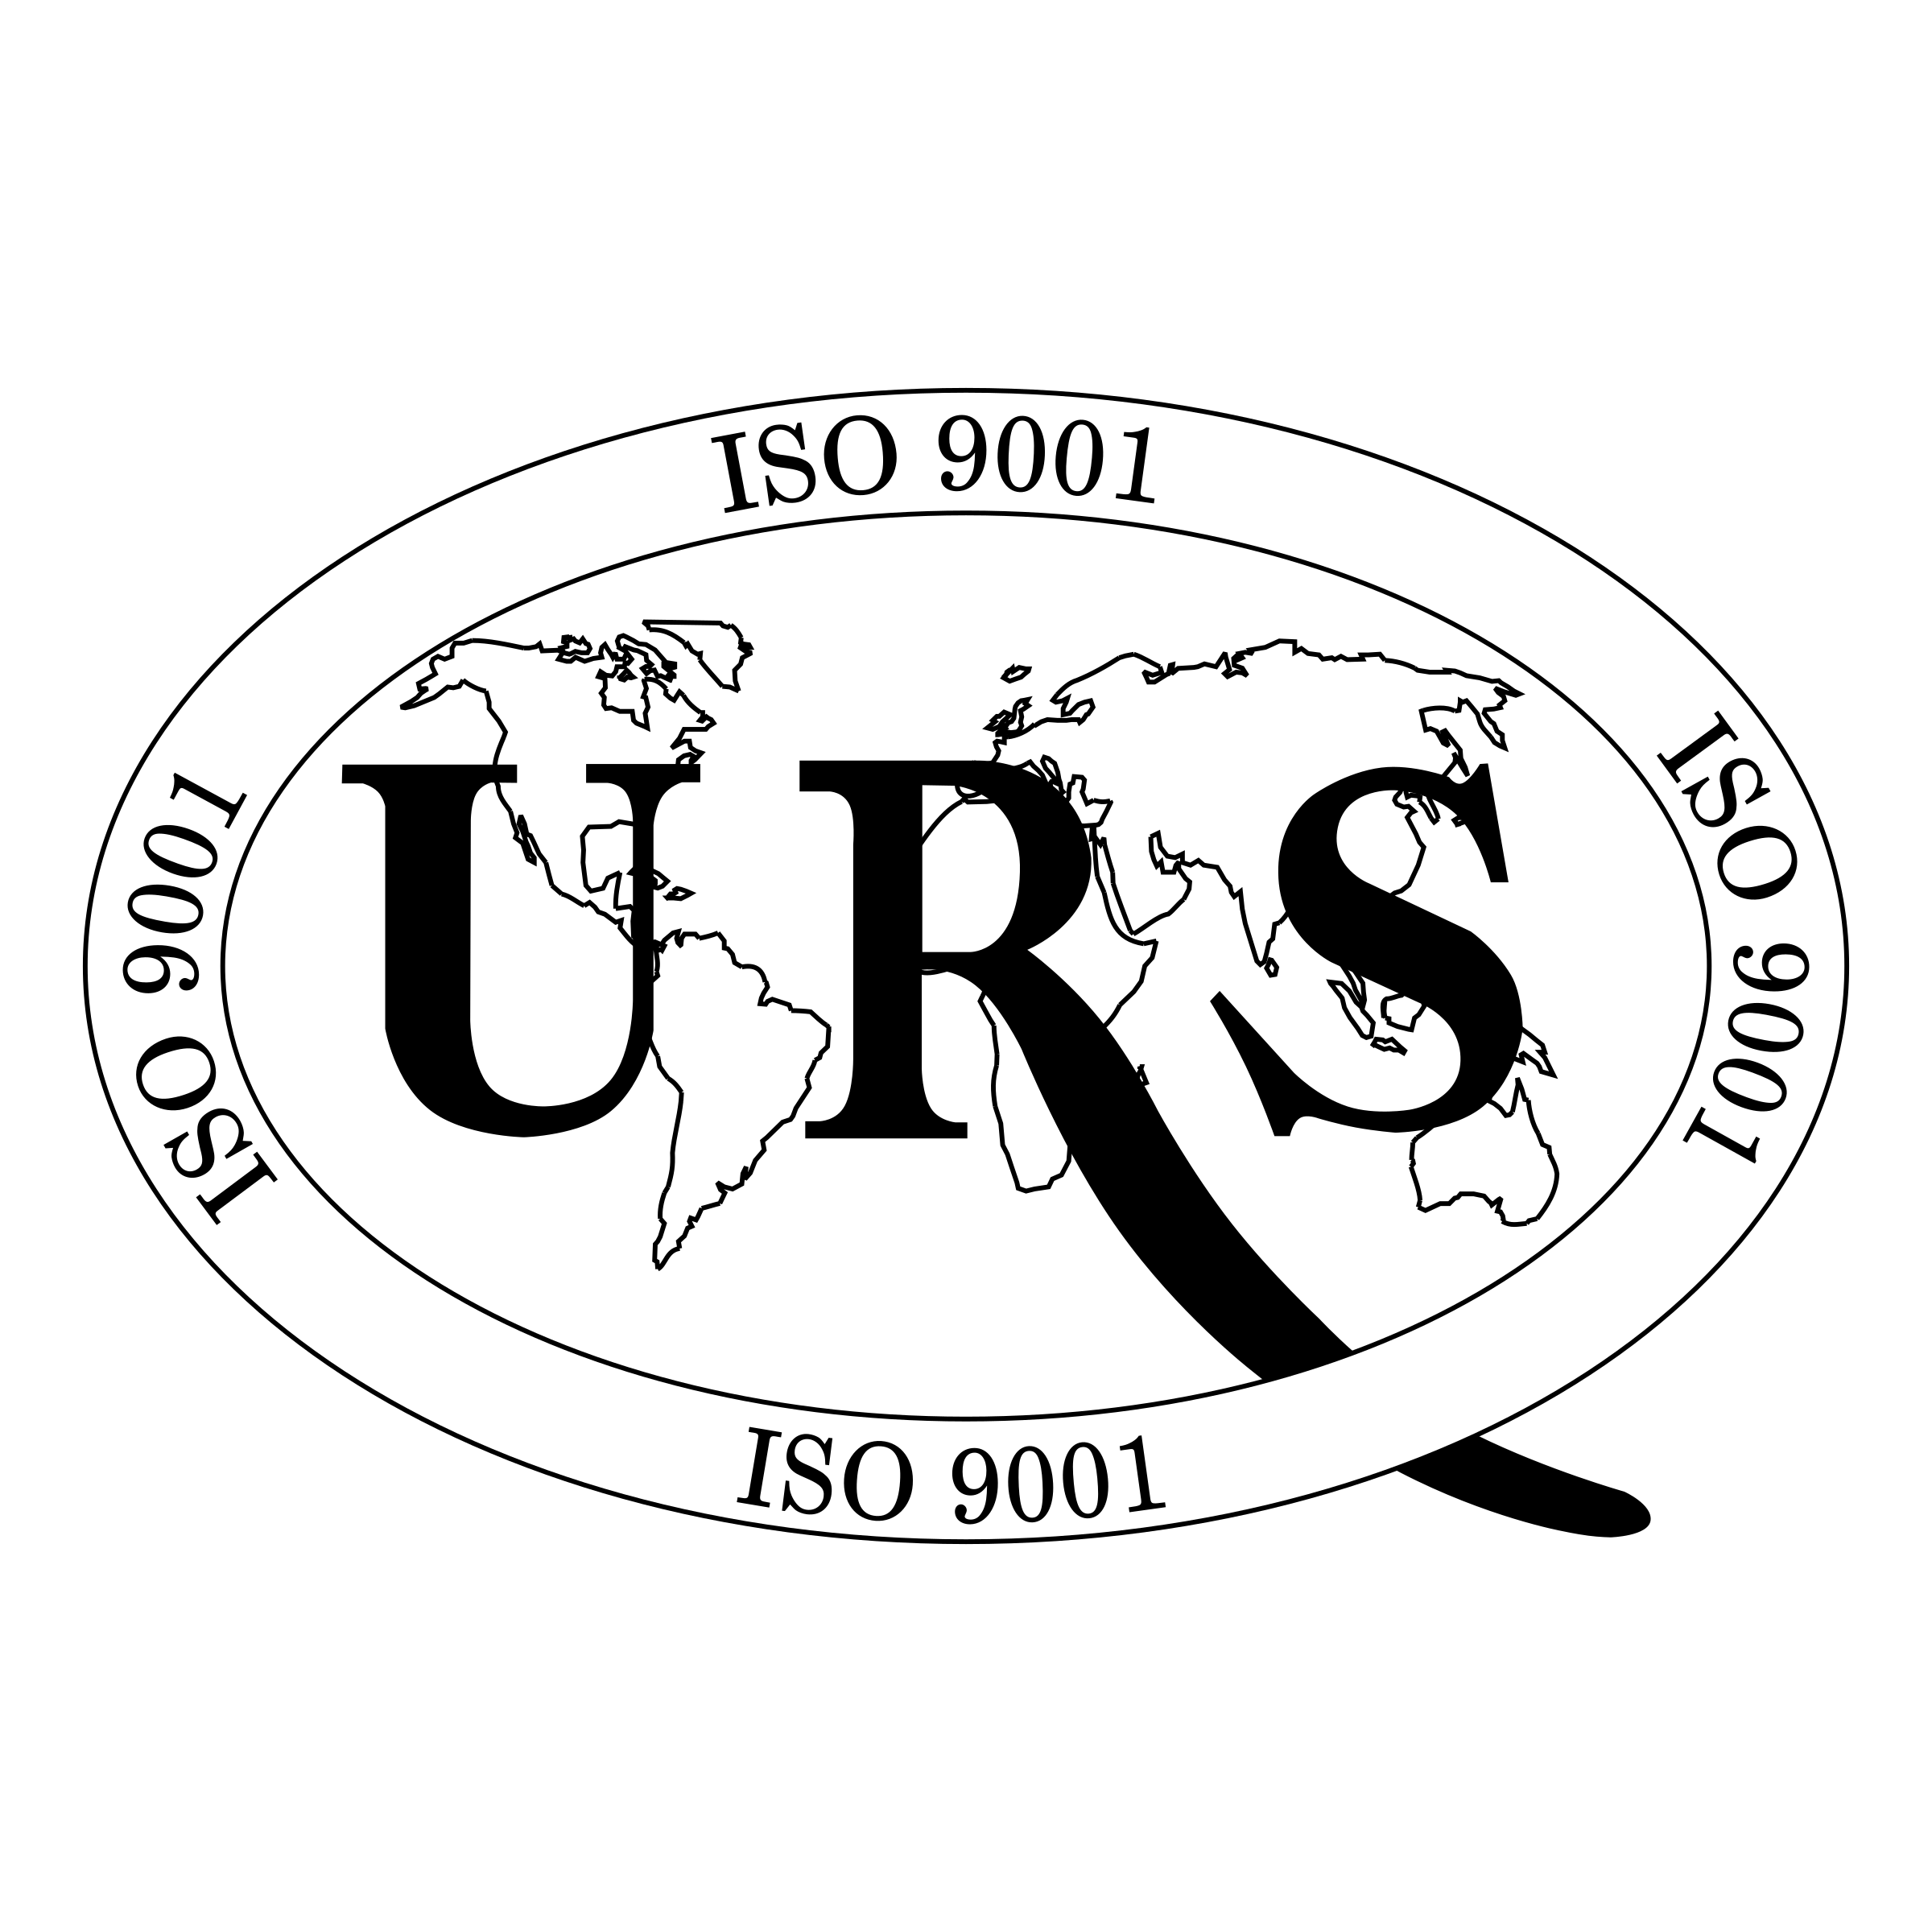 ISO 9001 Logo - URS ISO 9001 Logo PNG Transparent & SVG ...